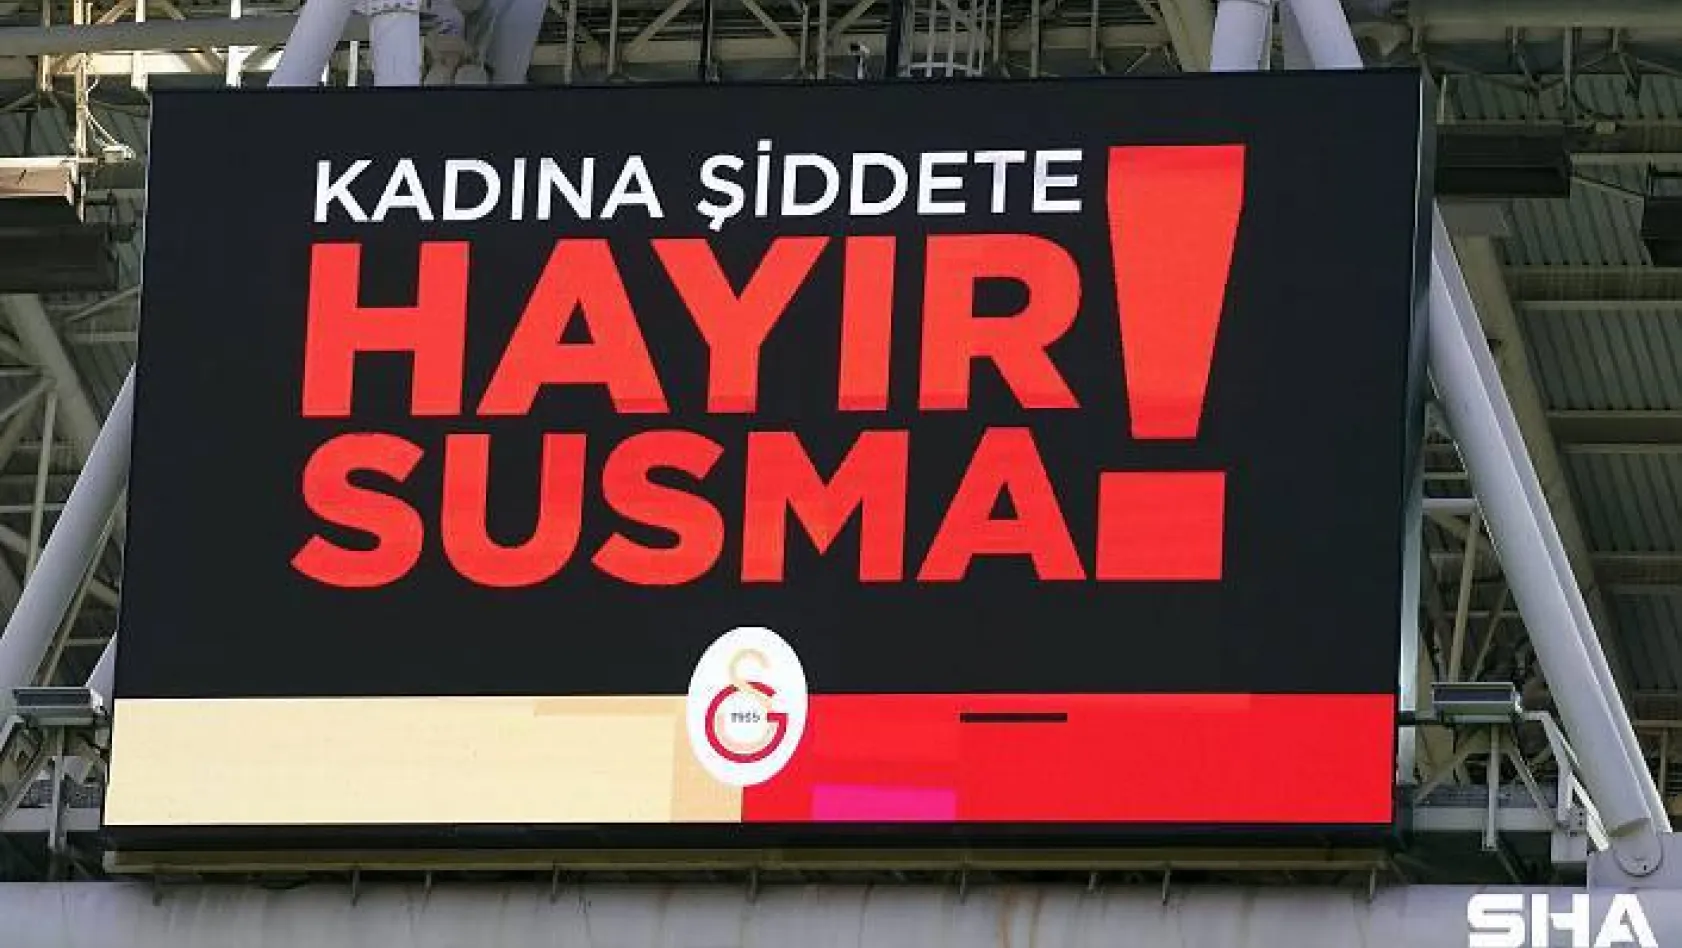 Türk Telekom Stadyumu'nda 8 Mart Kadınlar Günü mesajları